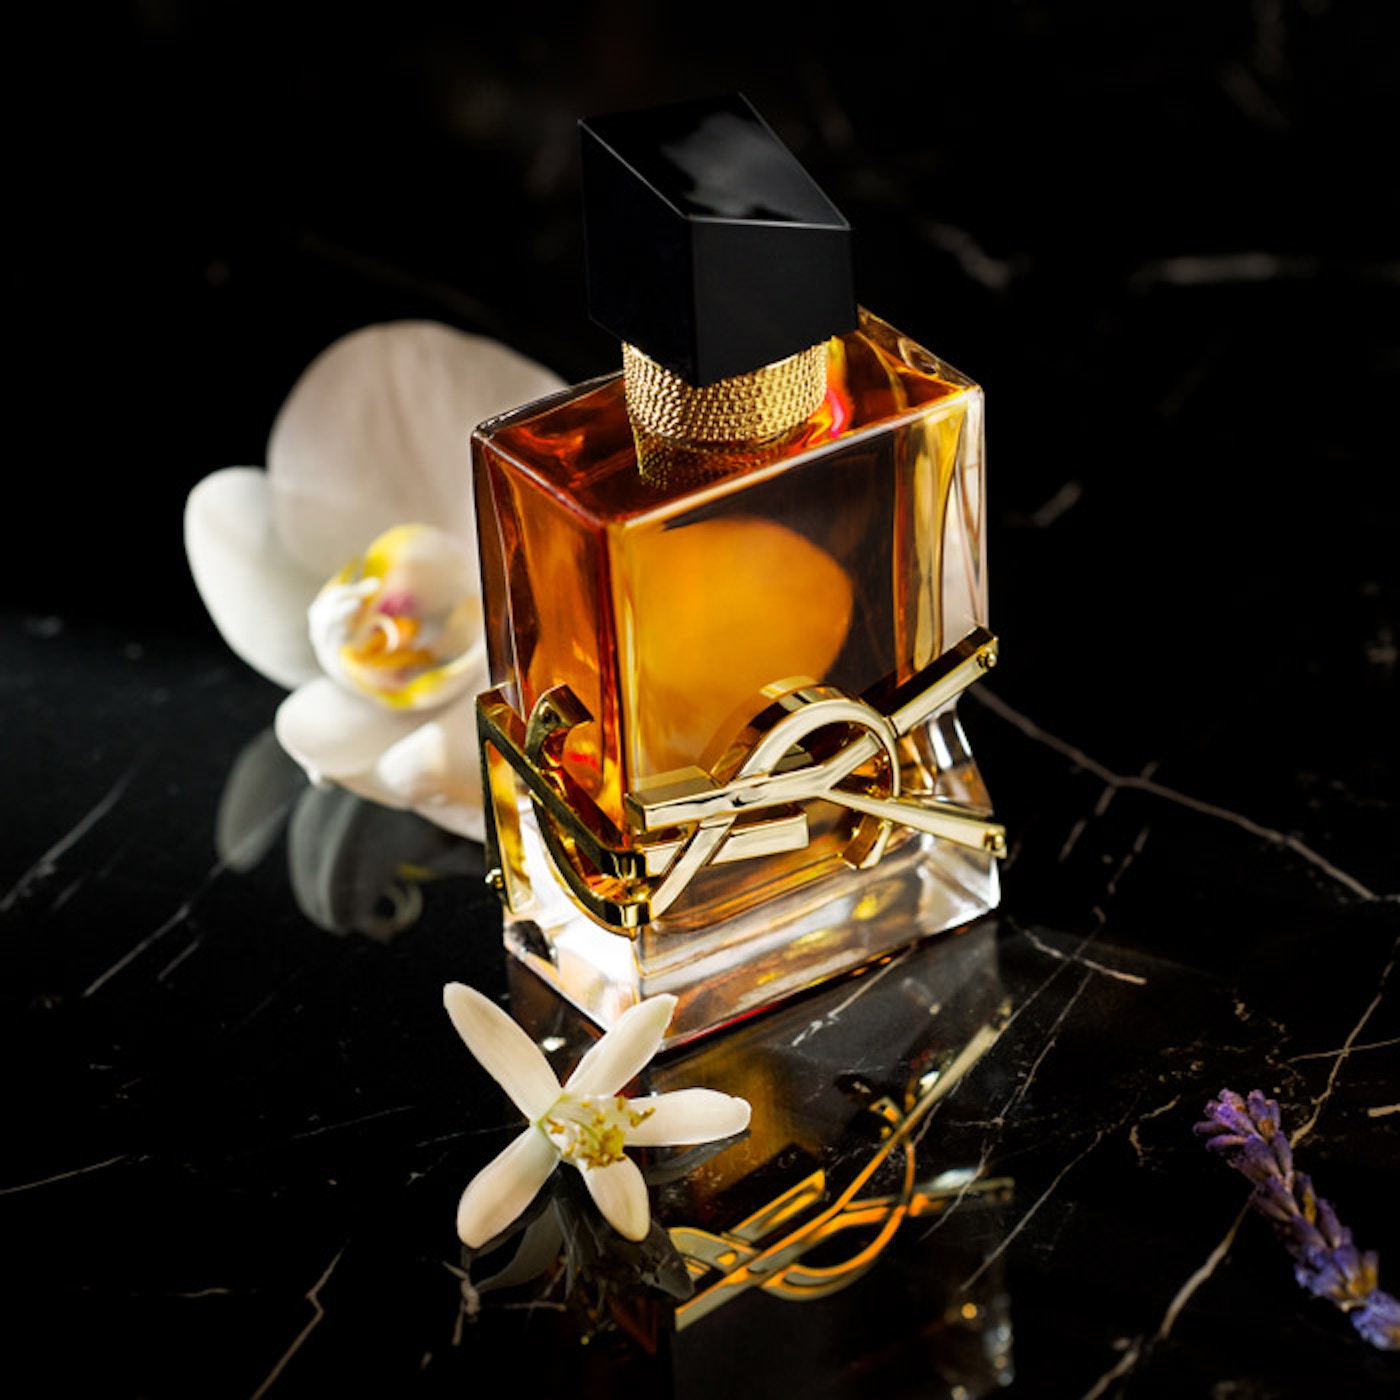 Yves Saint Laurent fragrance